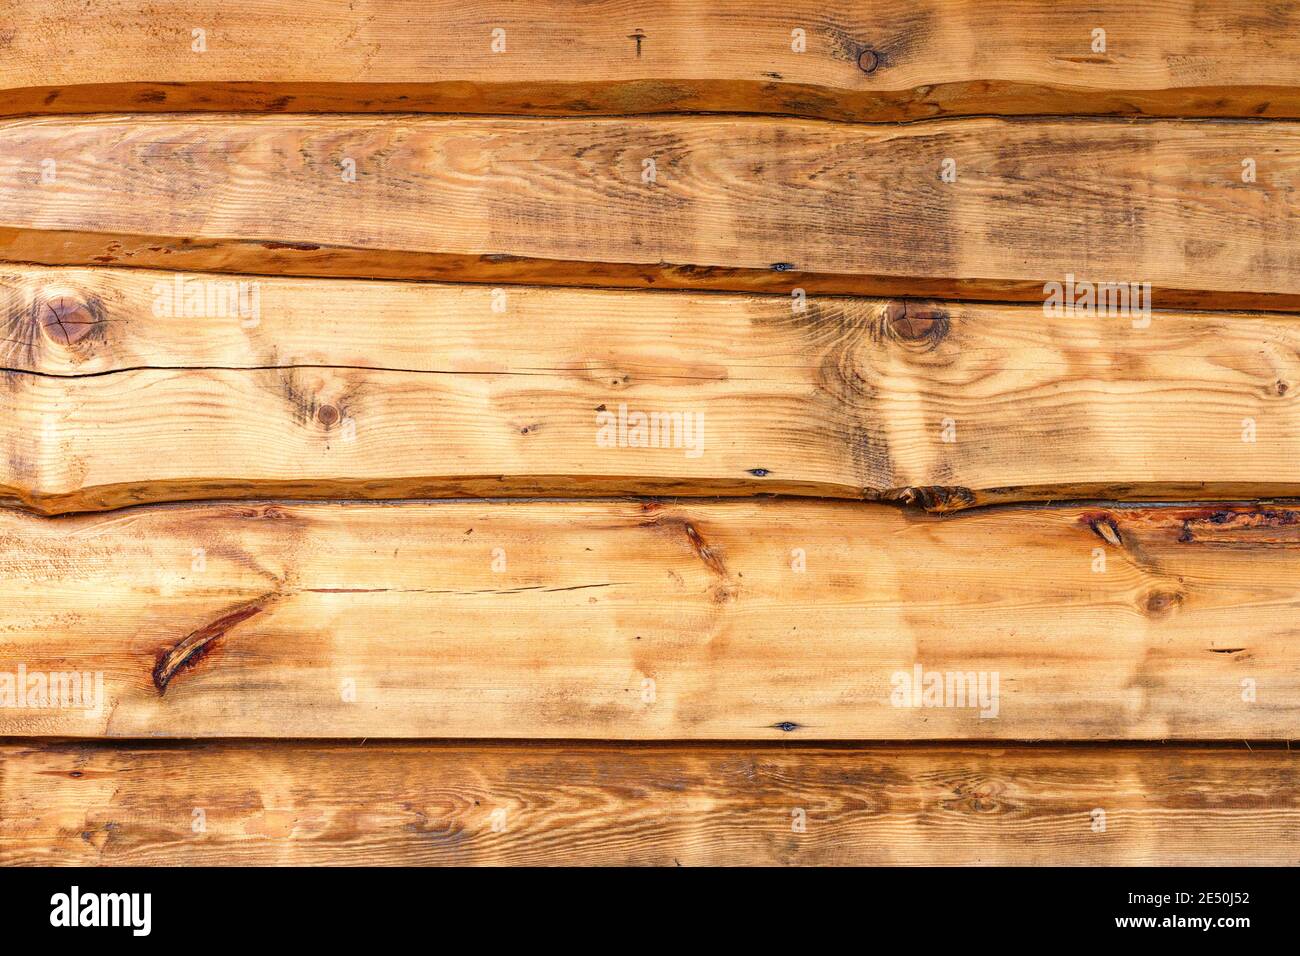 Textura natural de madera rugosa. fondo vertical de tablones de madera  vintage grunge. granero rústico marrón pared exterior. tarima de madera  texturizada. vista superior del piso retro, vista desde arriba o desde